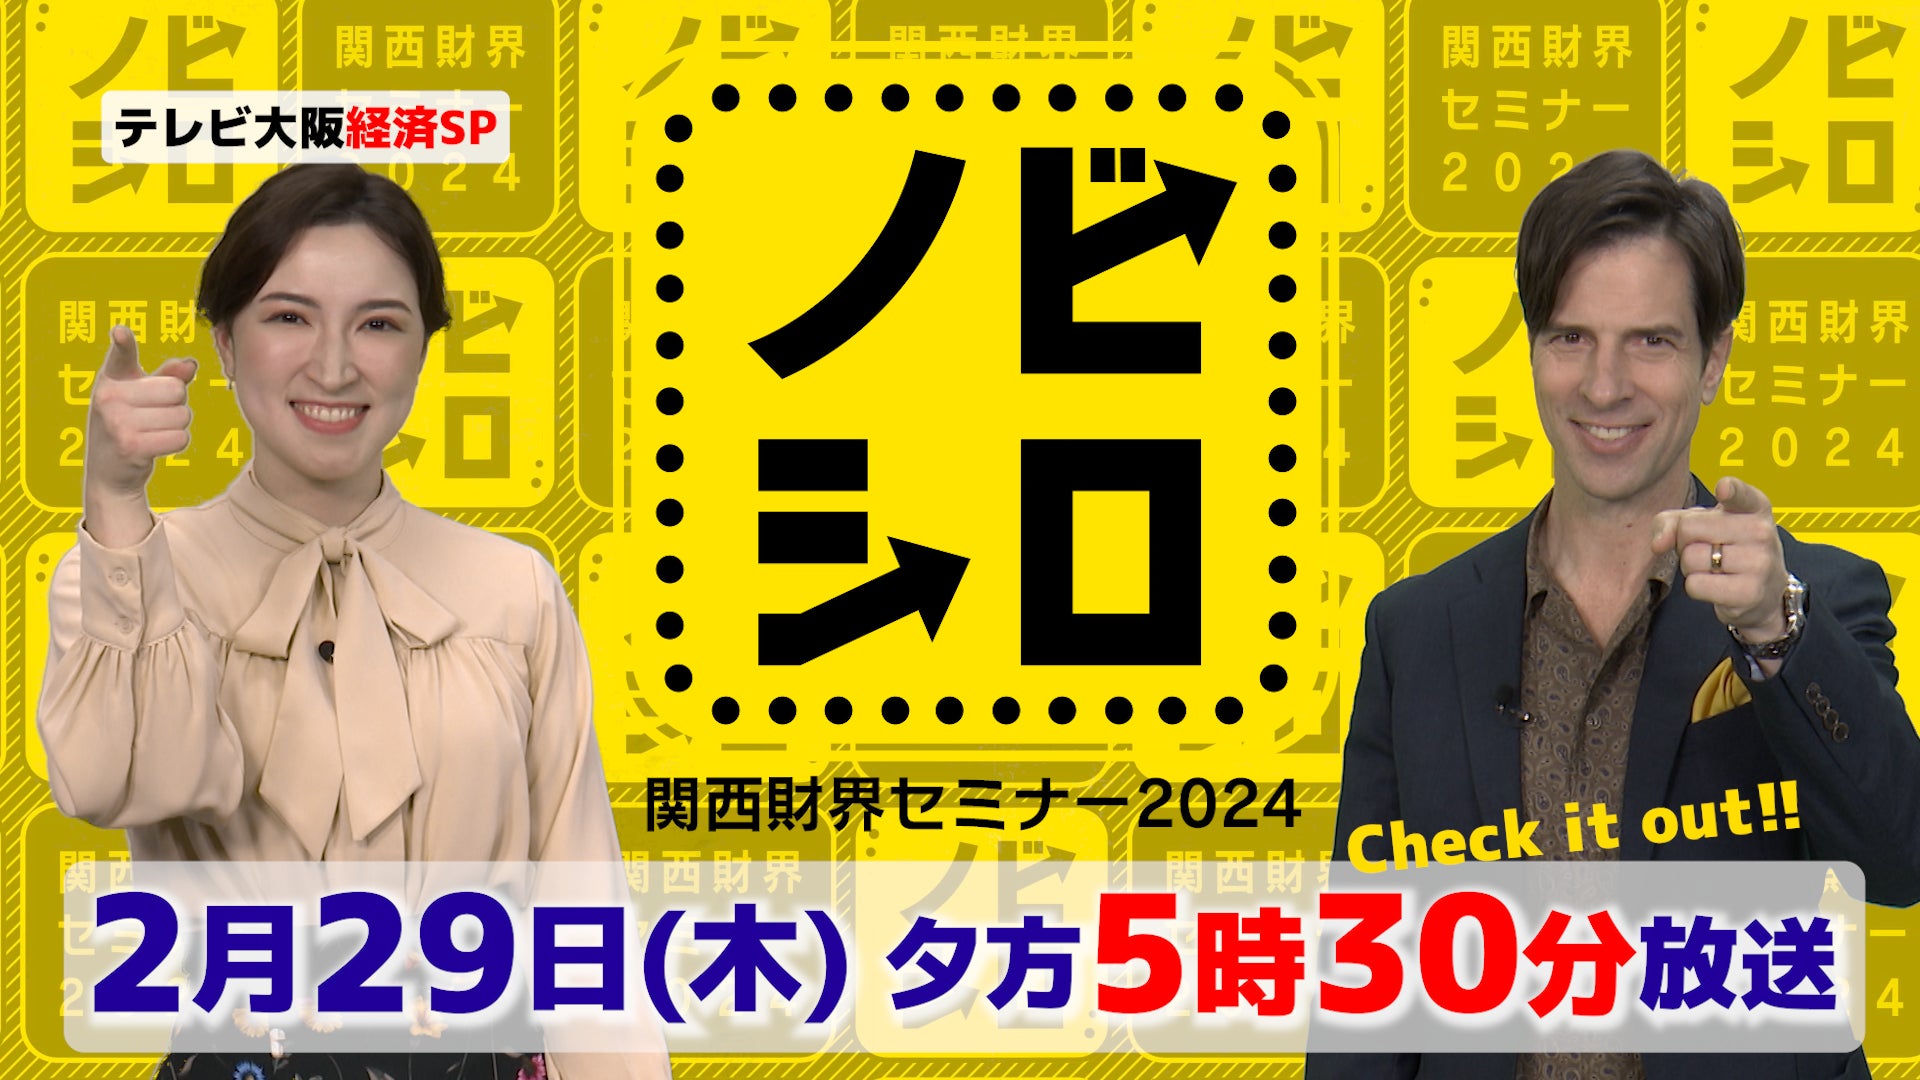 テレビ大阪経済スペシャル「ノビシロ～関西財界セミナー2024～」